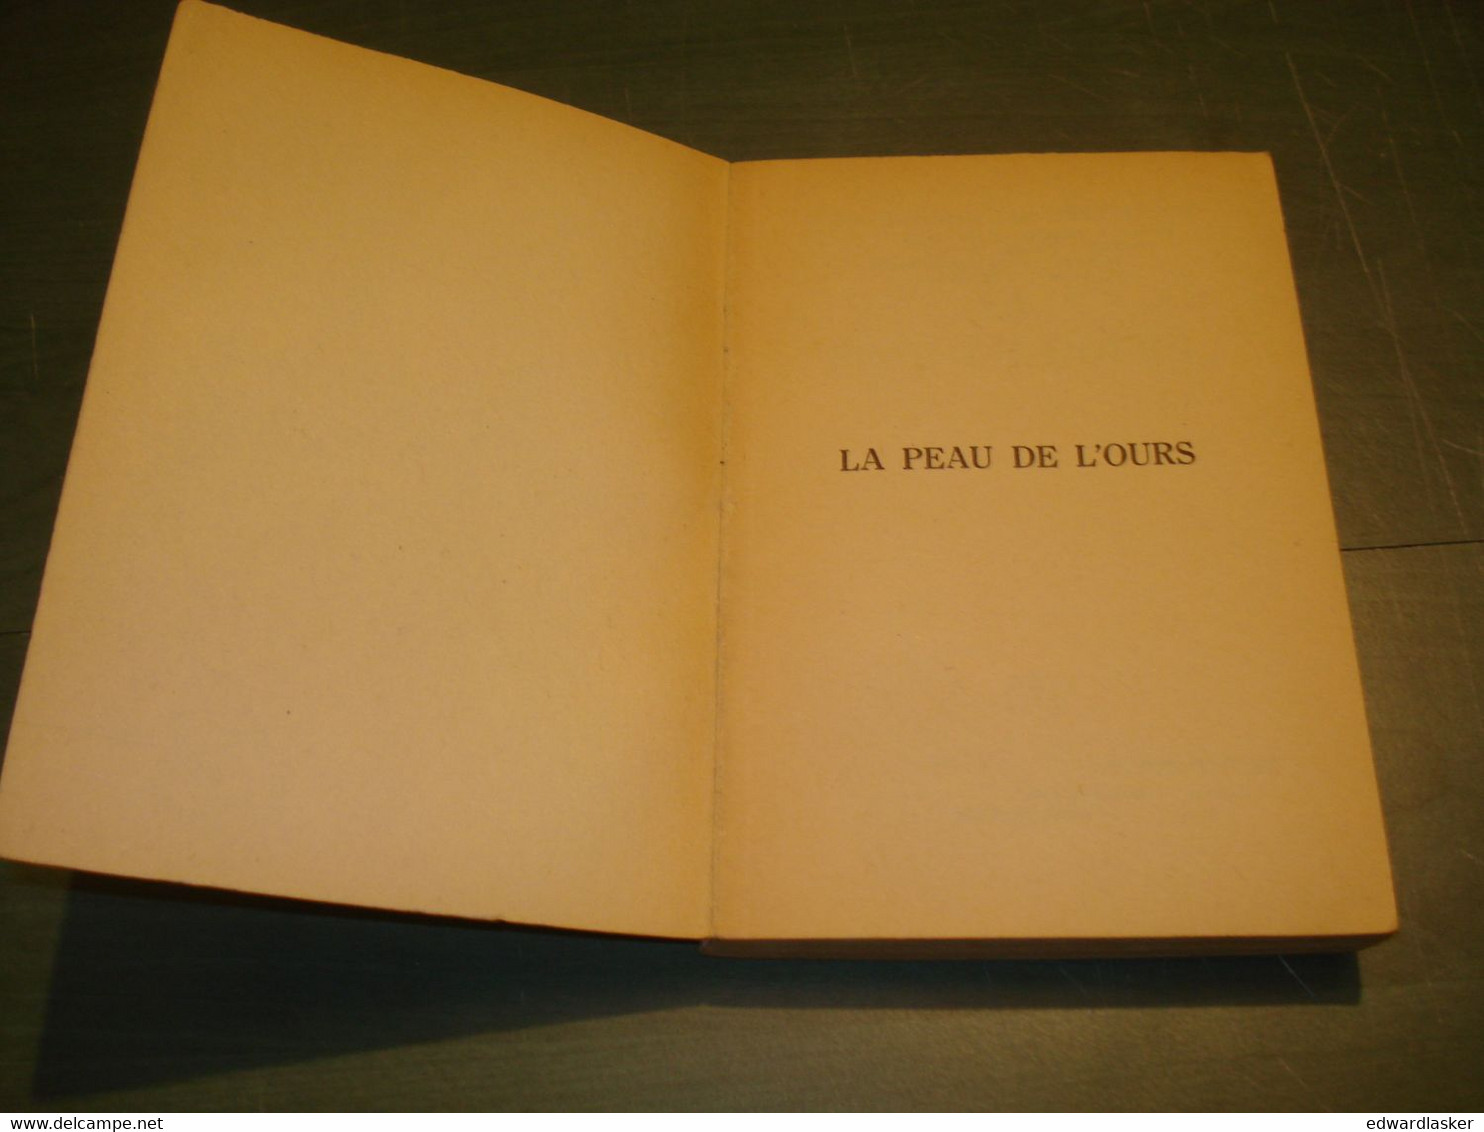 Un MYSTERE N°598 : La Peau De L'ours /Dorothea Bennett - 1961 - Presses De La Cité